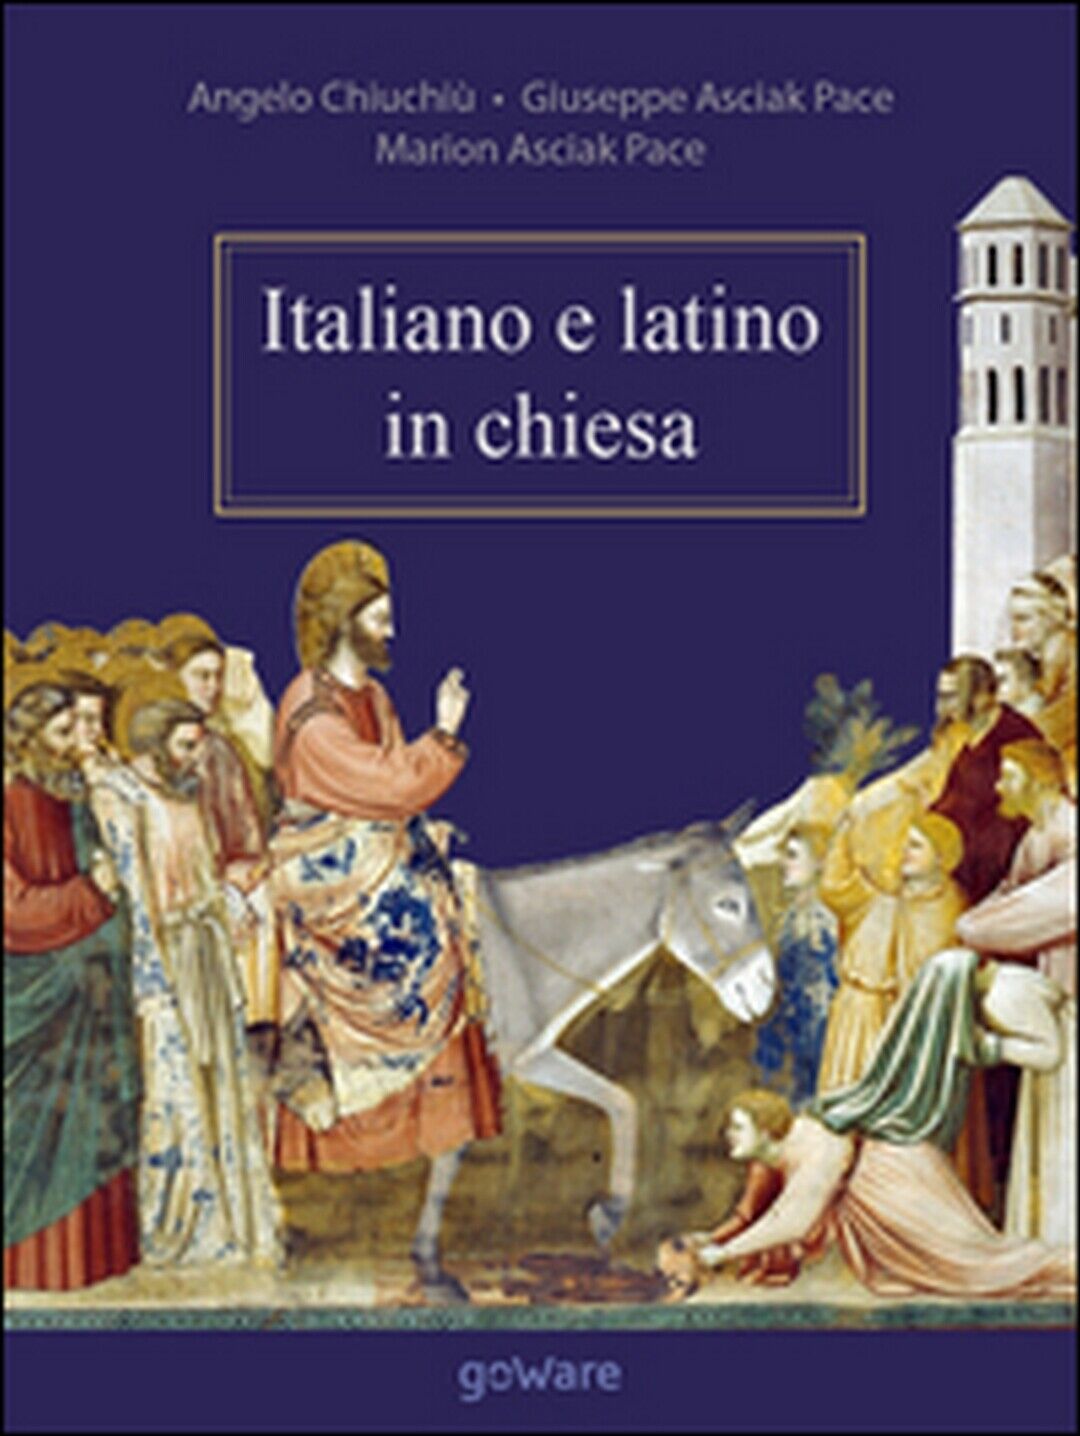 Italiano e latino in chiesa  di Angelo Chiuchi?, Giuseppe e Marion Asciak Pace libro usato